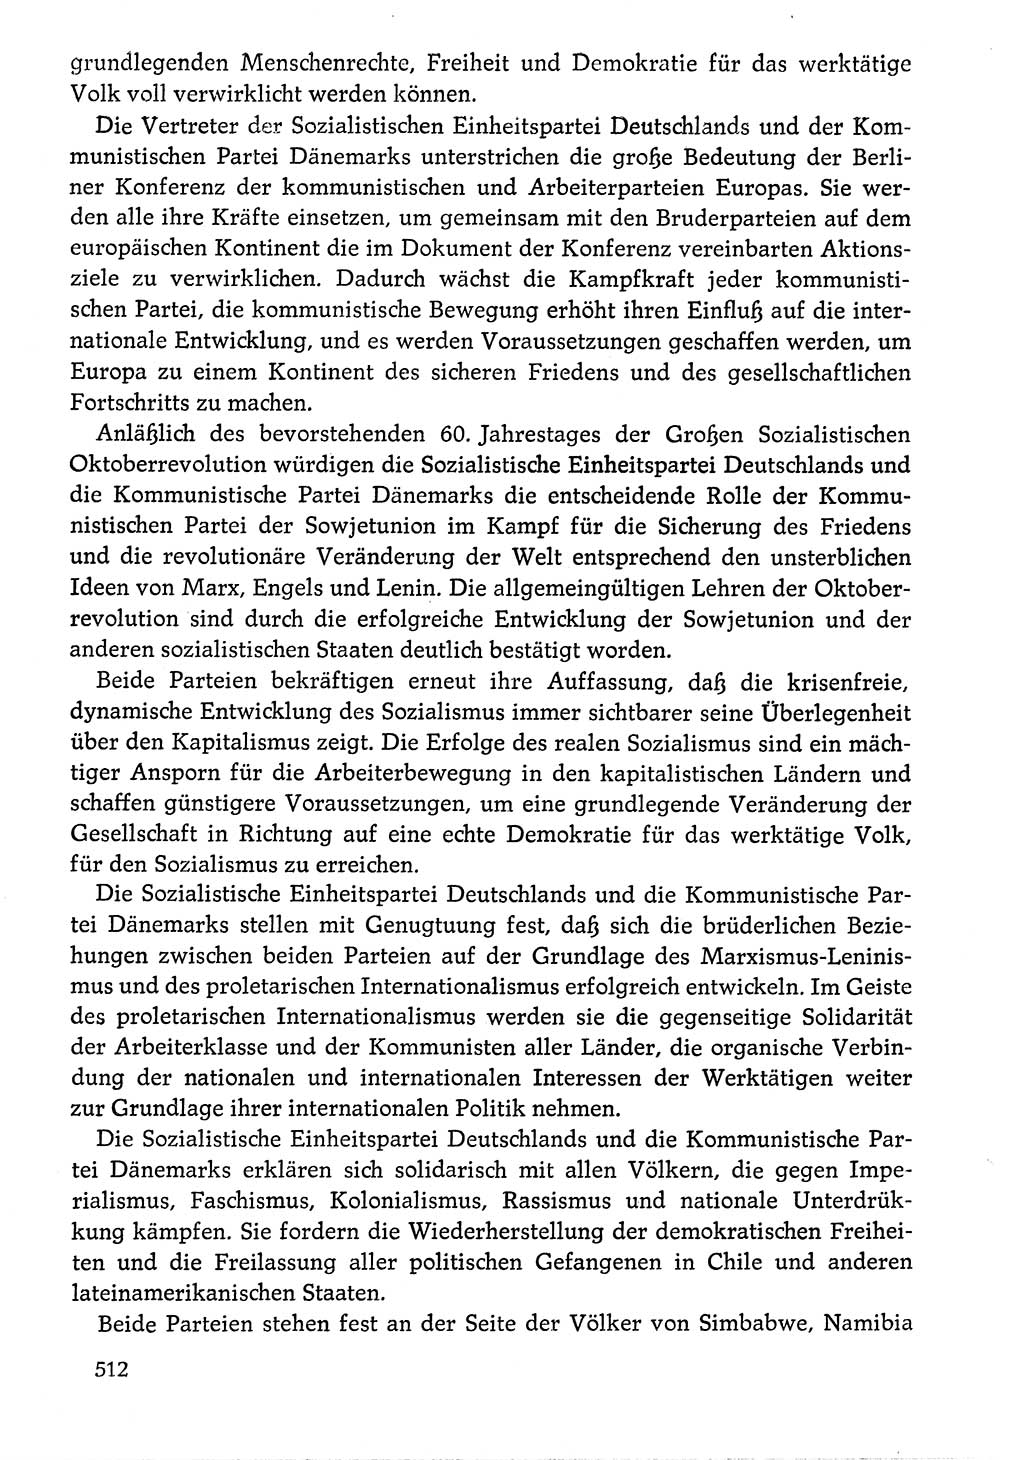 Dokumente der Sozialistischen Einheitspartei Deutschlands (SED) [Deutsche Demokratische Republik (DDR)] 1976-1977, Seite 512 (Dok. SED DDR 1976-1977, S. 512)